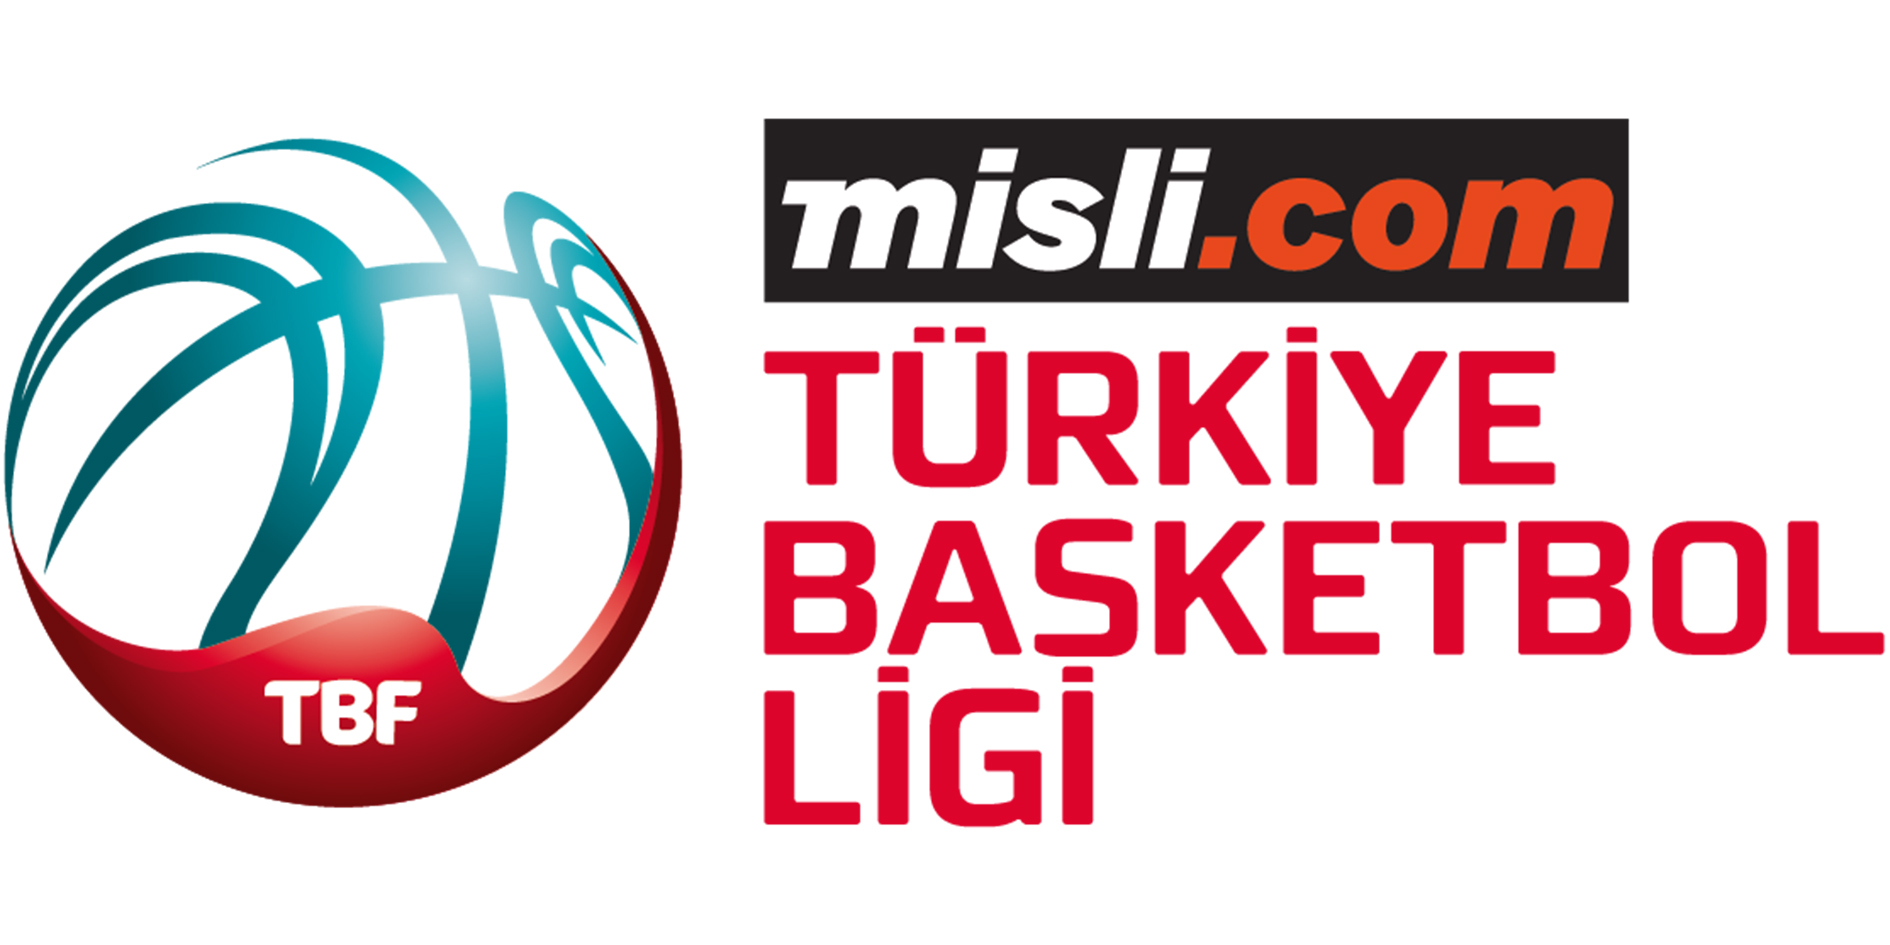 Misli.com Türkiye Basketbol Ligi'nde play-off maçları yarın başlayacak